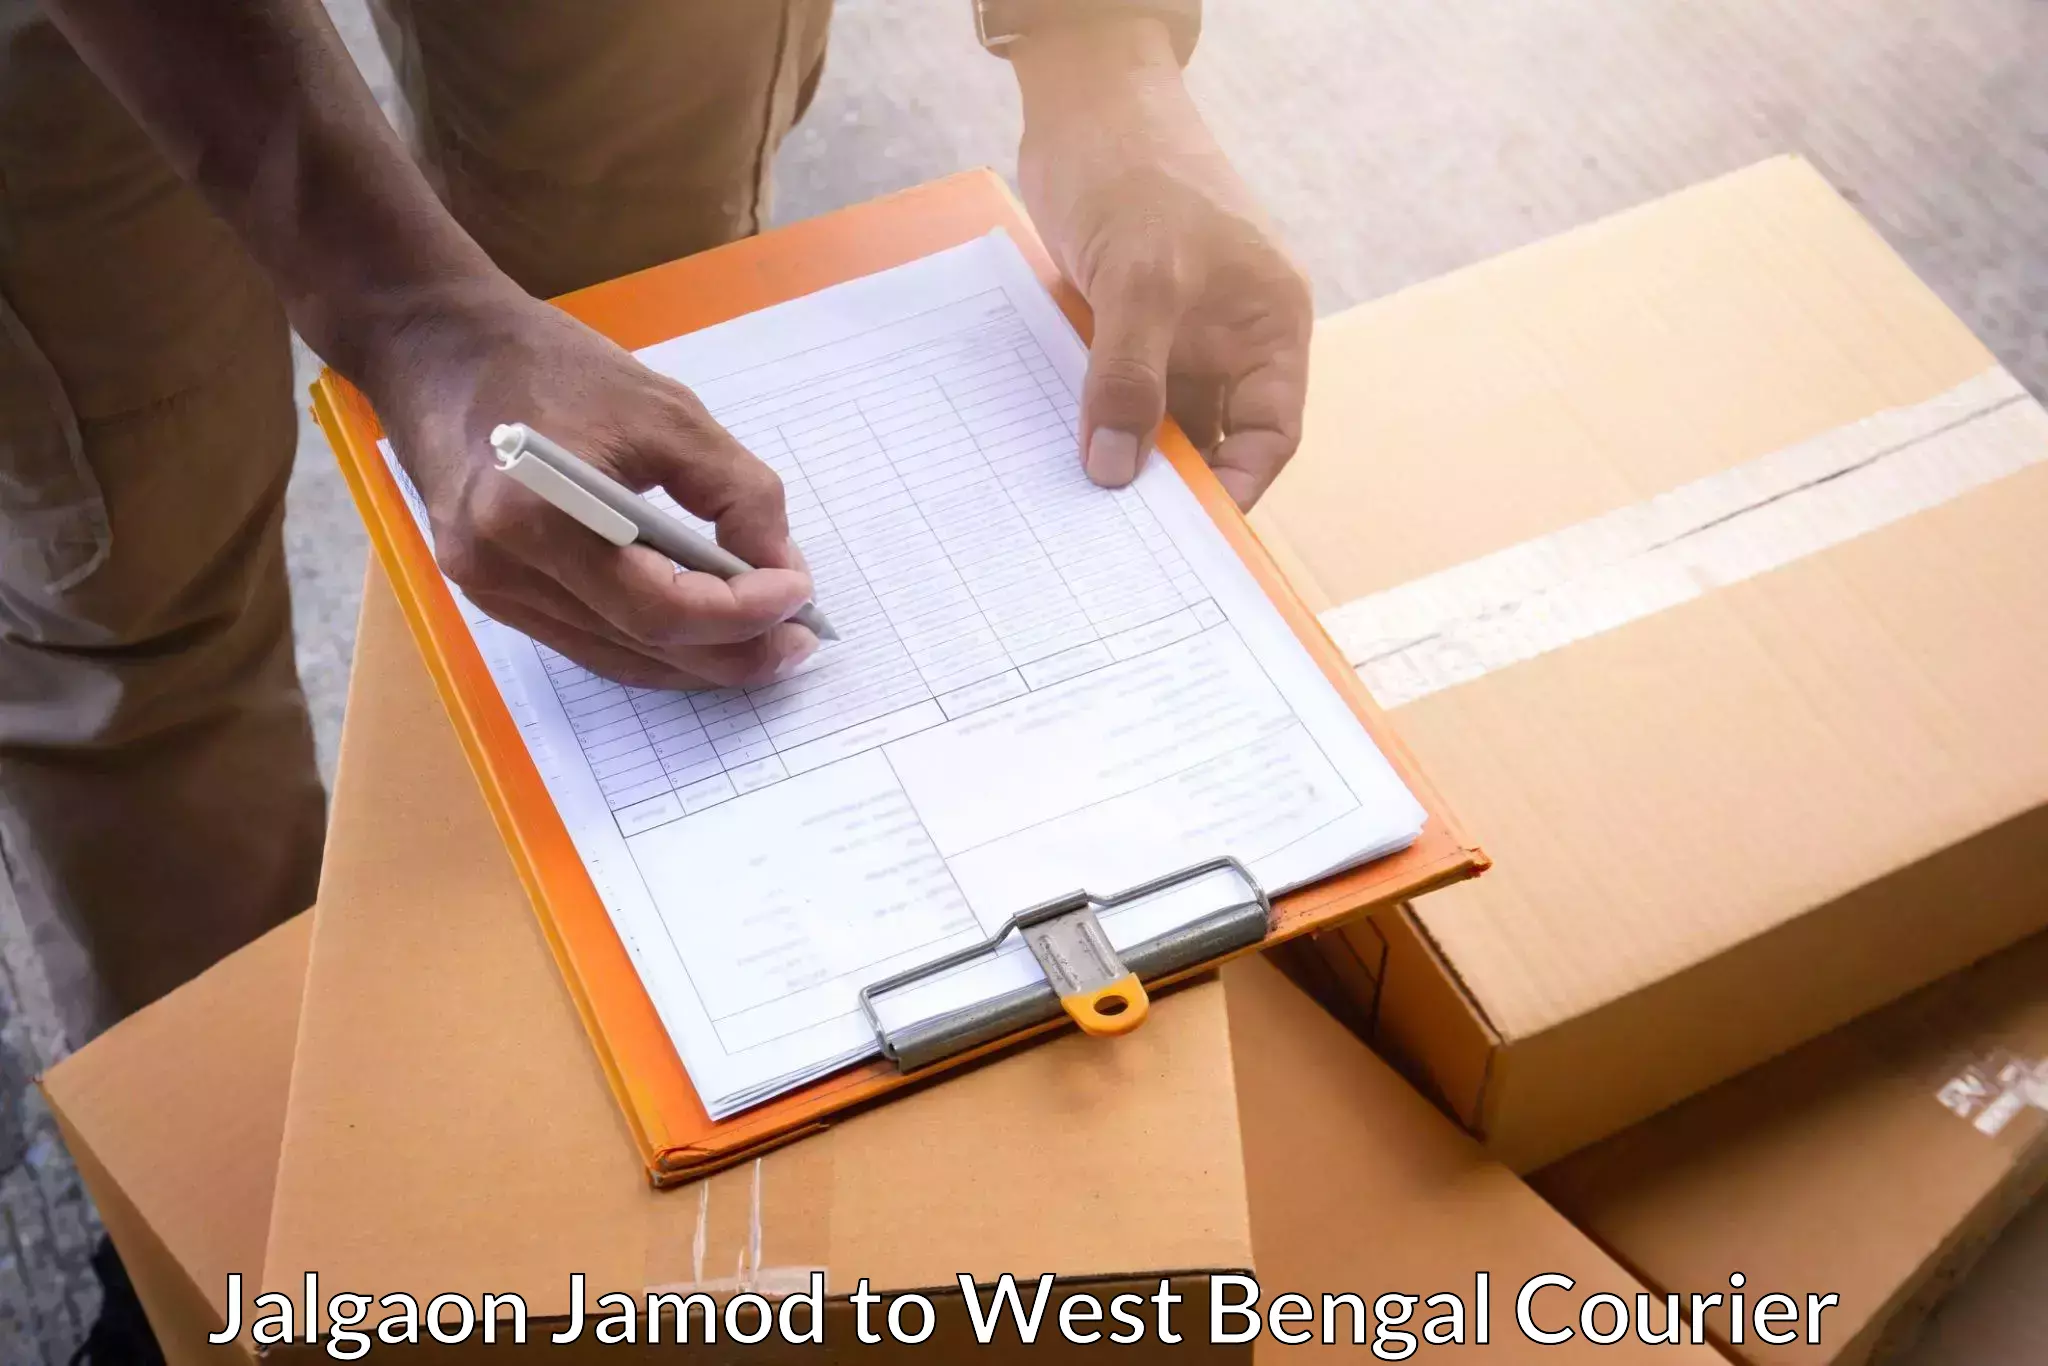 Nationwide courier service Jalgaon Jamod to Kolkata Port